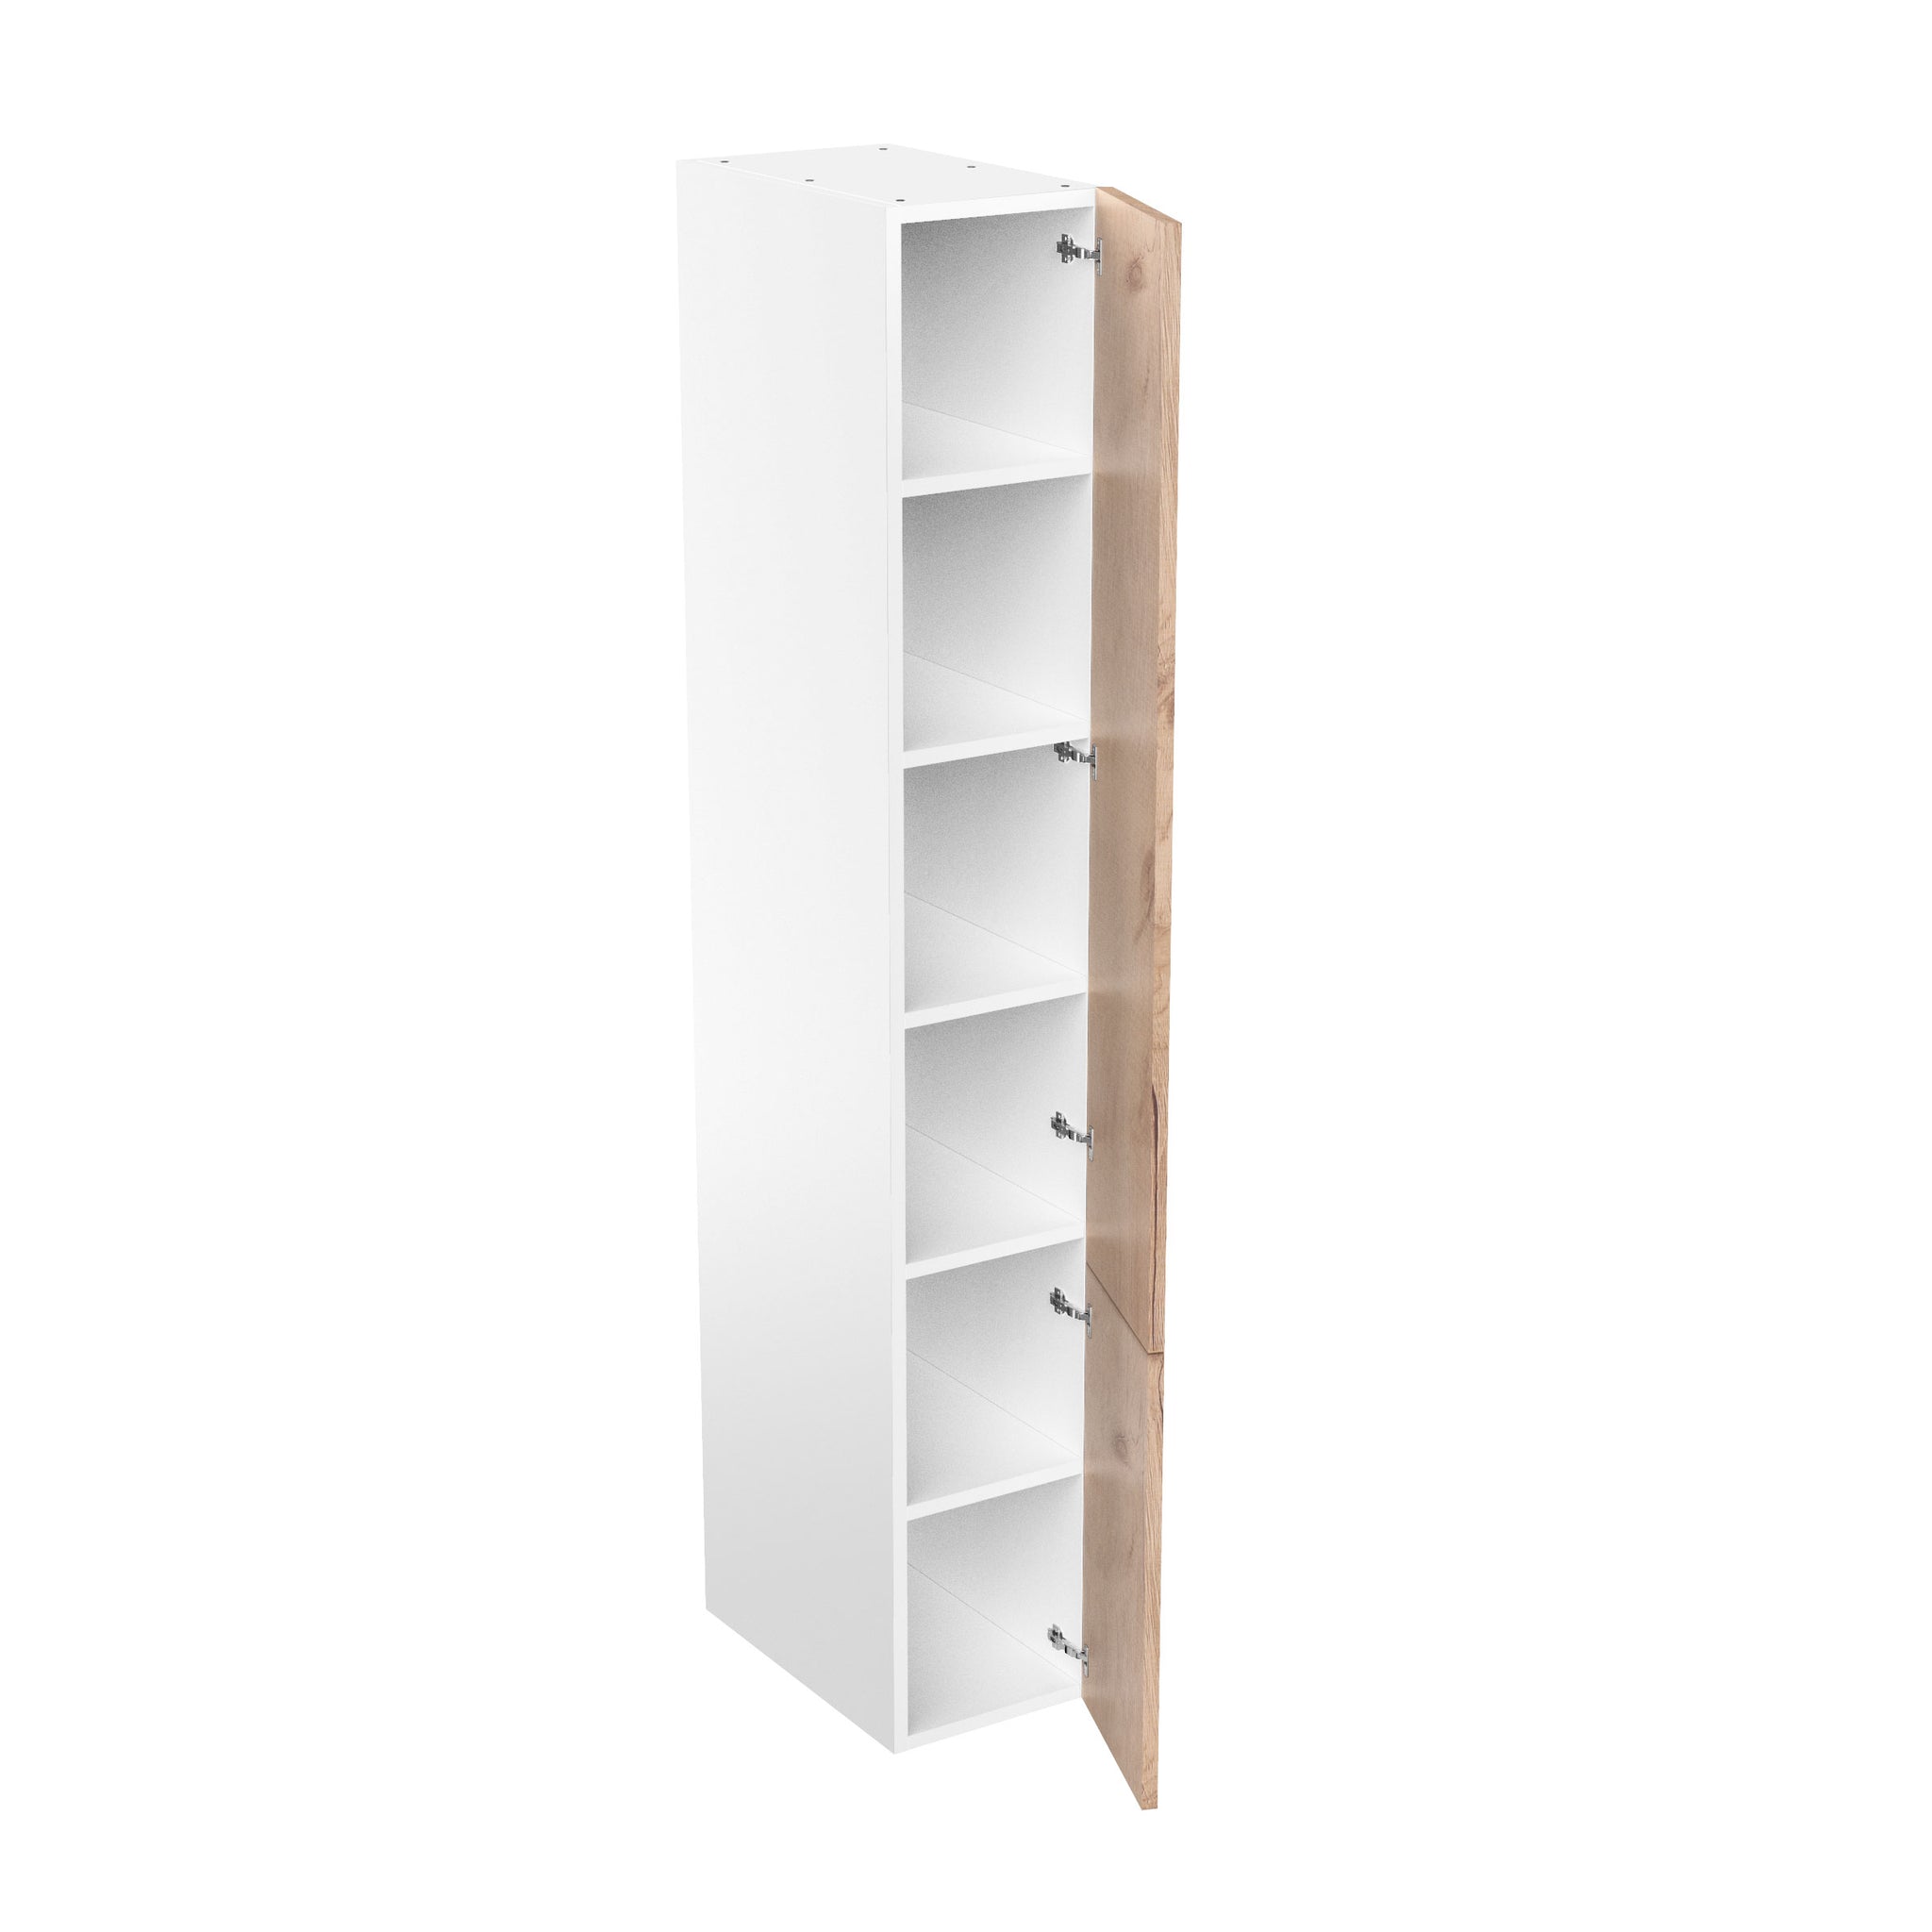 RTA - Rustic Oak - Single Door Tall Cabinets | 15"W x 96"H x 24"D